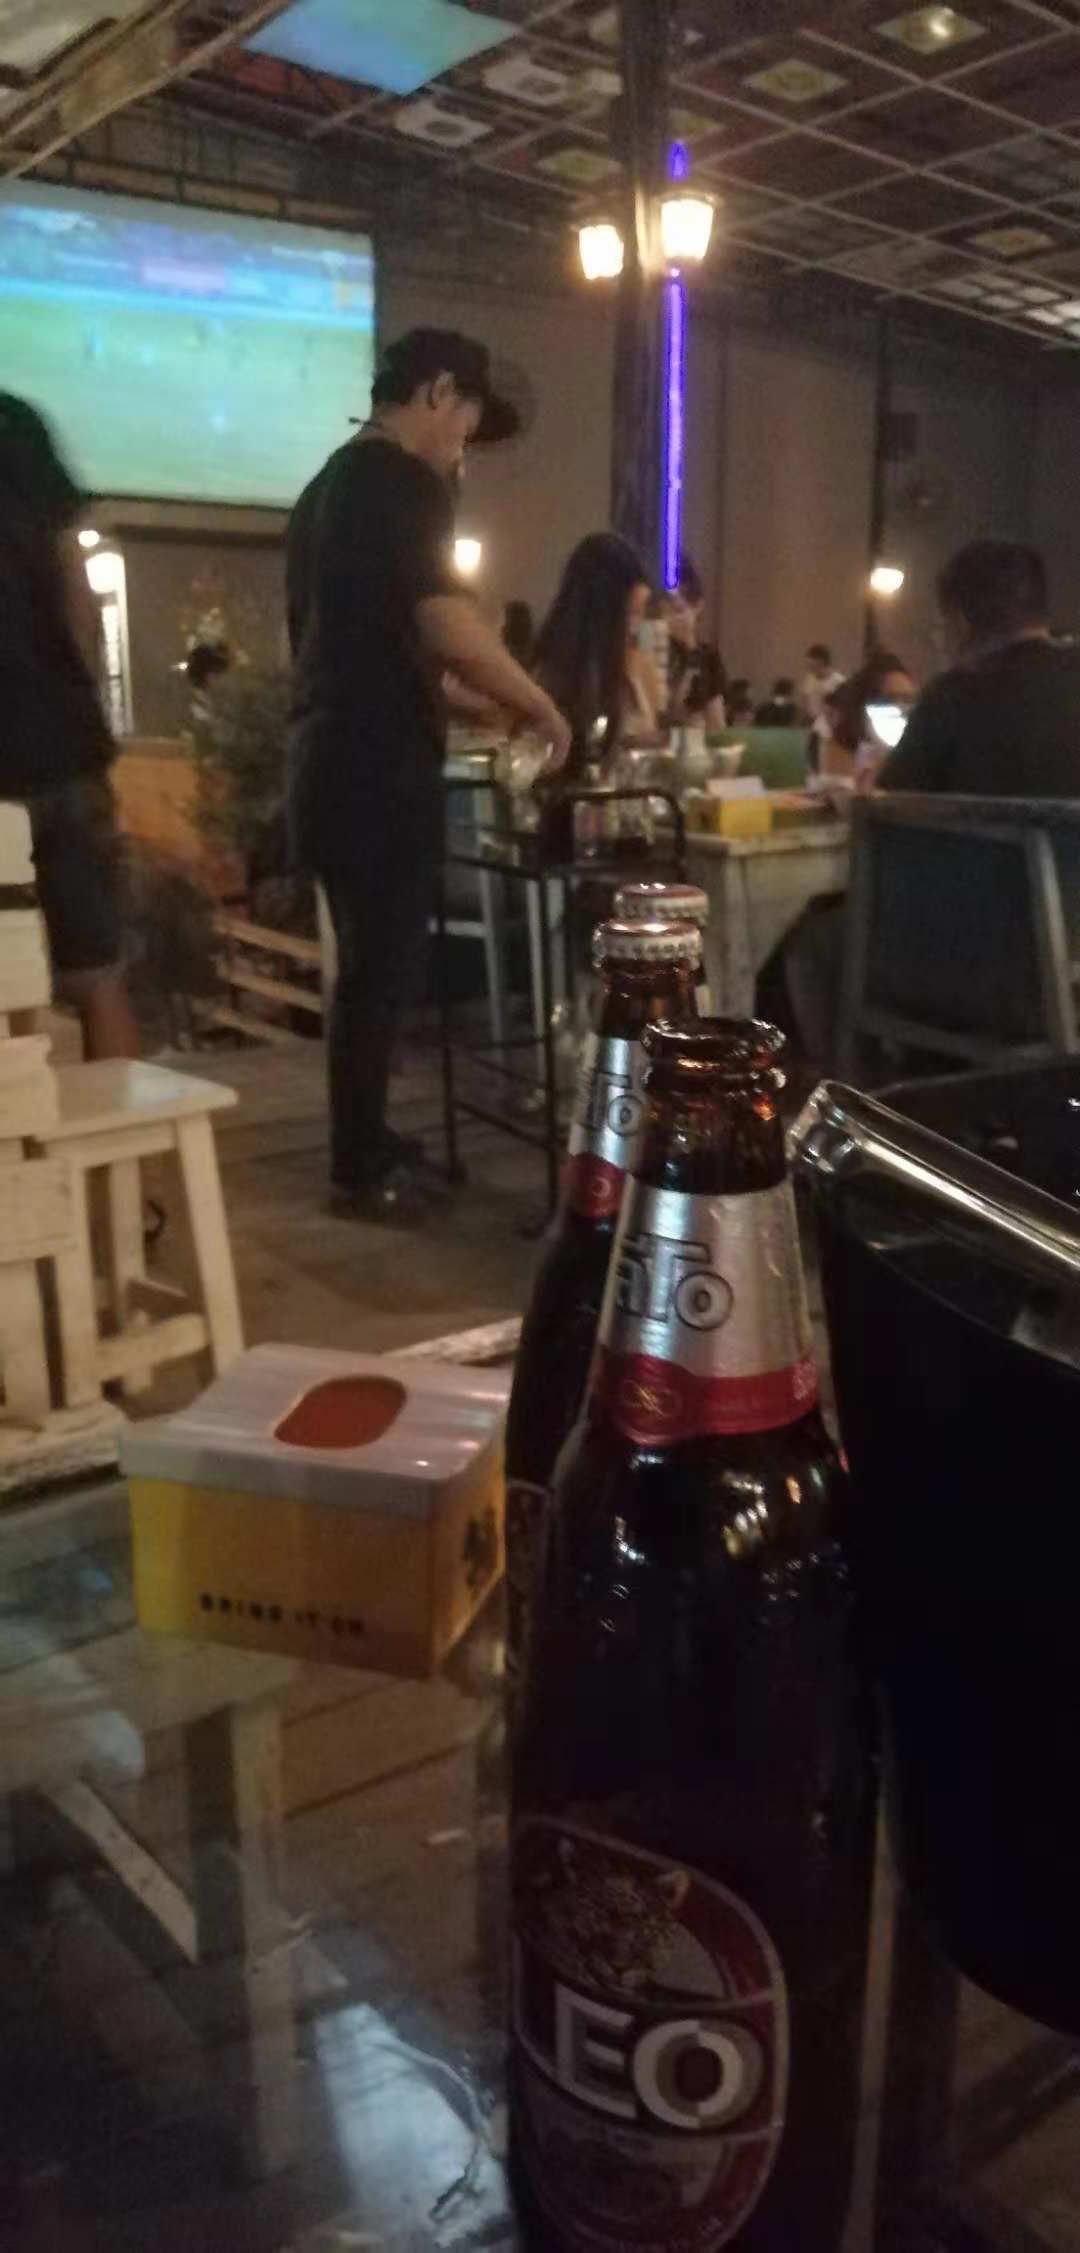 泰國酒吧真心便宜，服務好 美女很多！一個勁的在那里亂扭51 / 作者:123456790 / 帖子ID:468